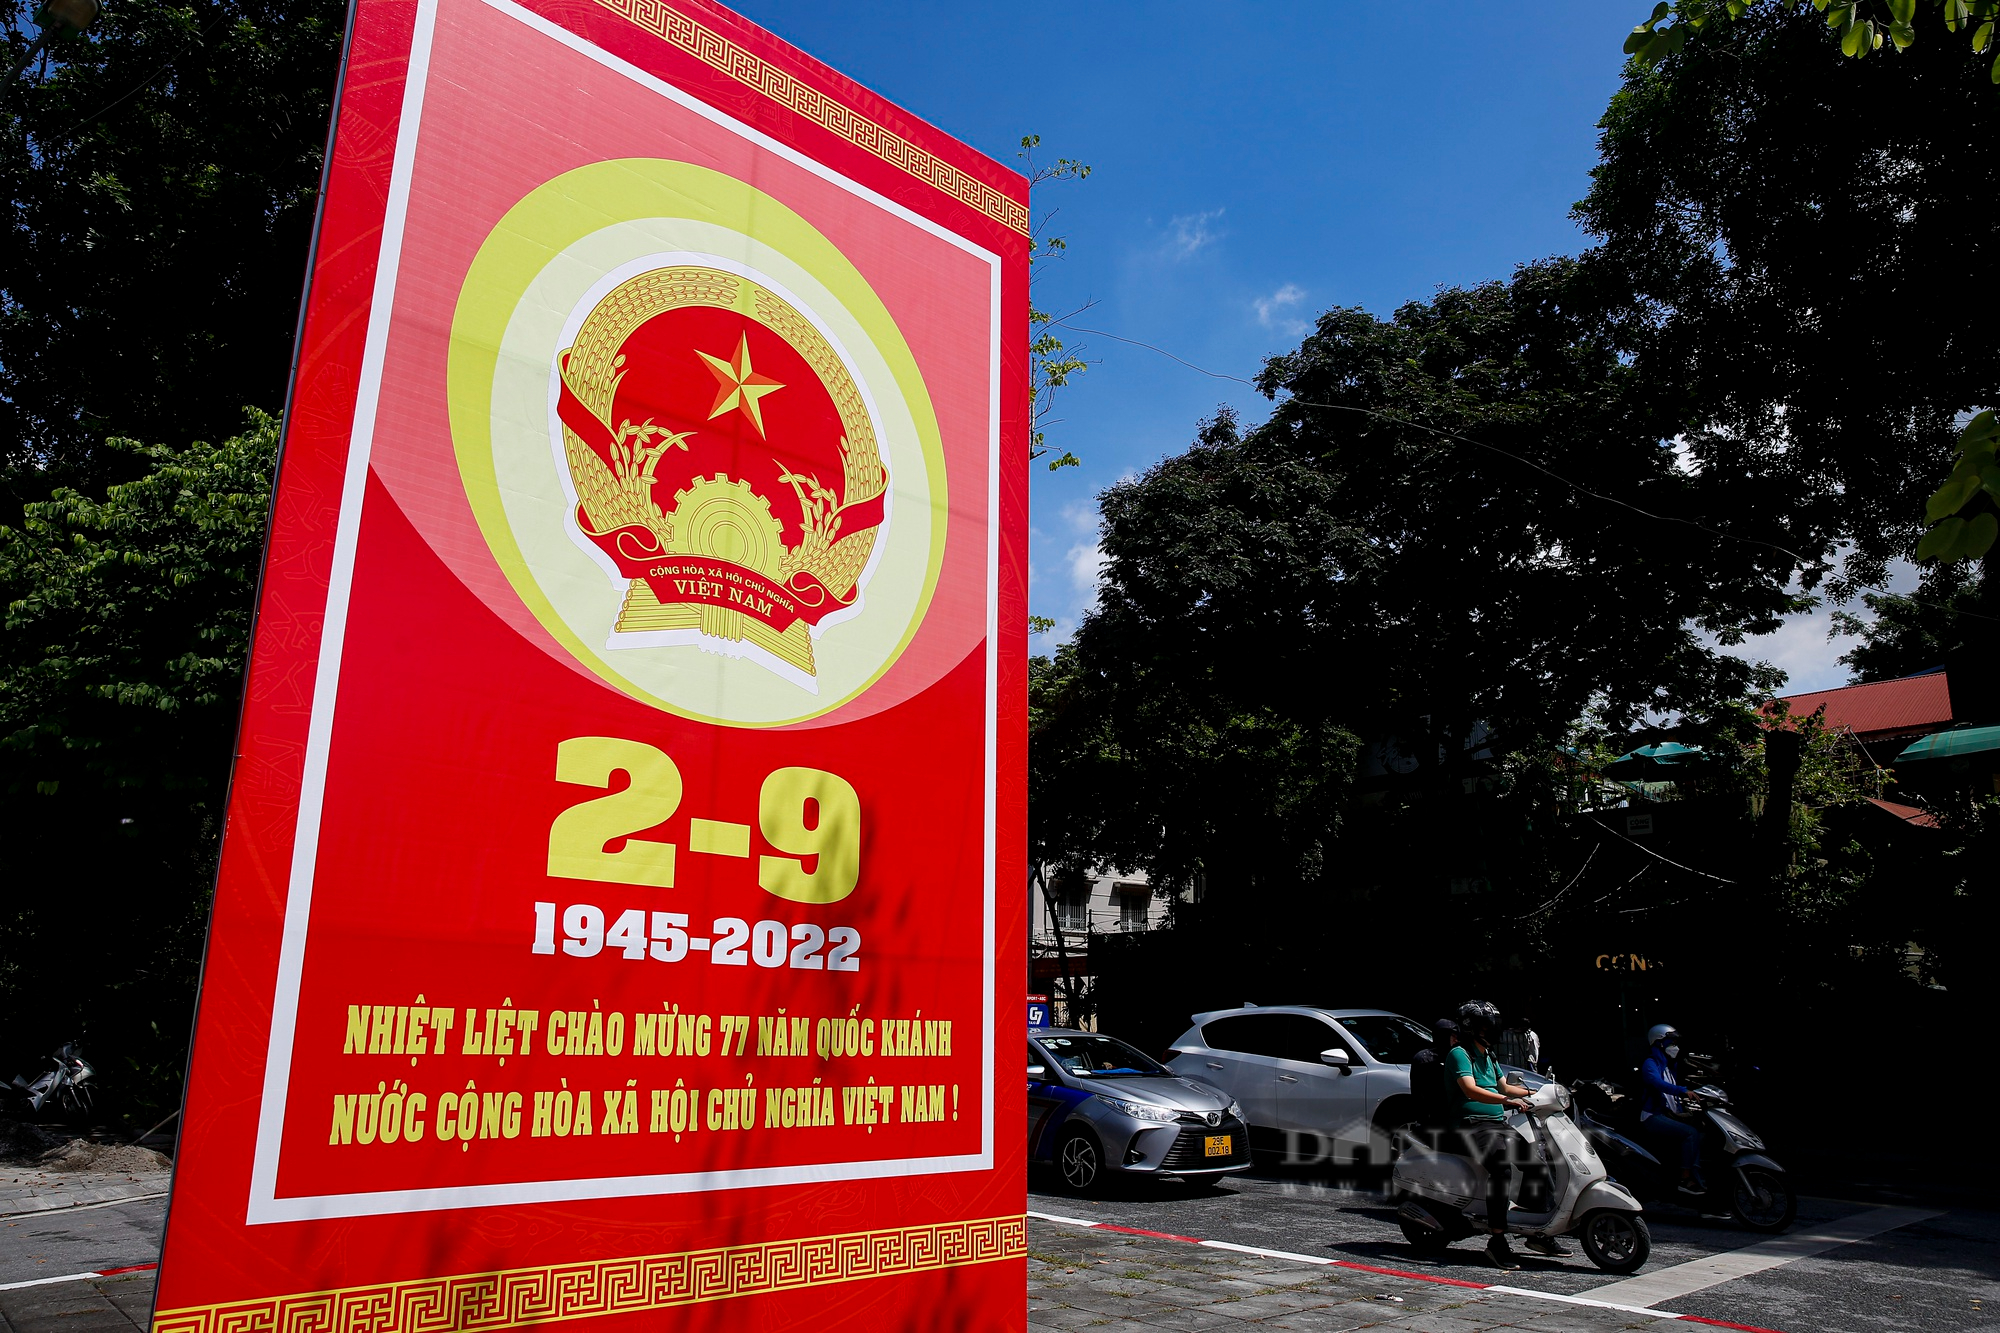 Đường phố Hà Nội rực màu cờ đỏ thắm chào mừng ngày Quốc khánh 2/9 - Ảnh 6.